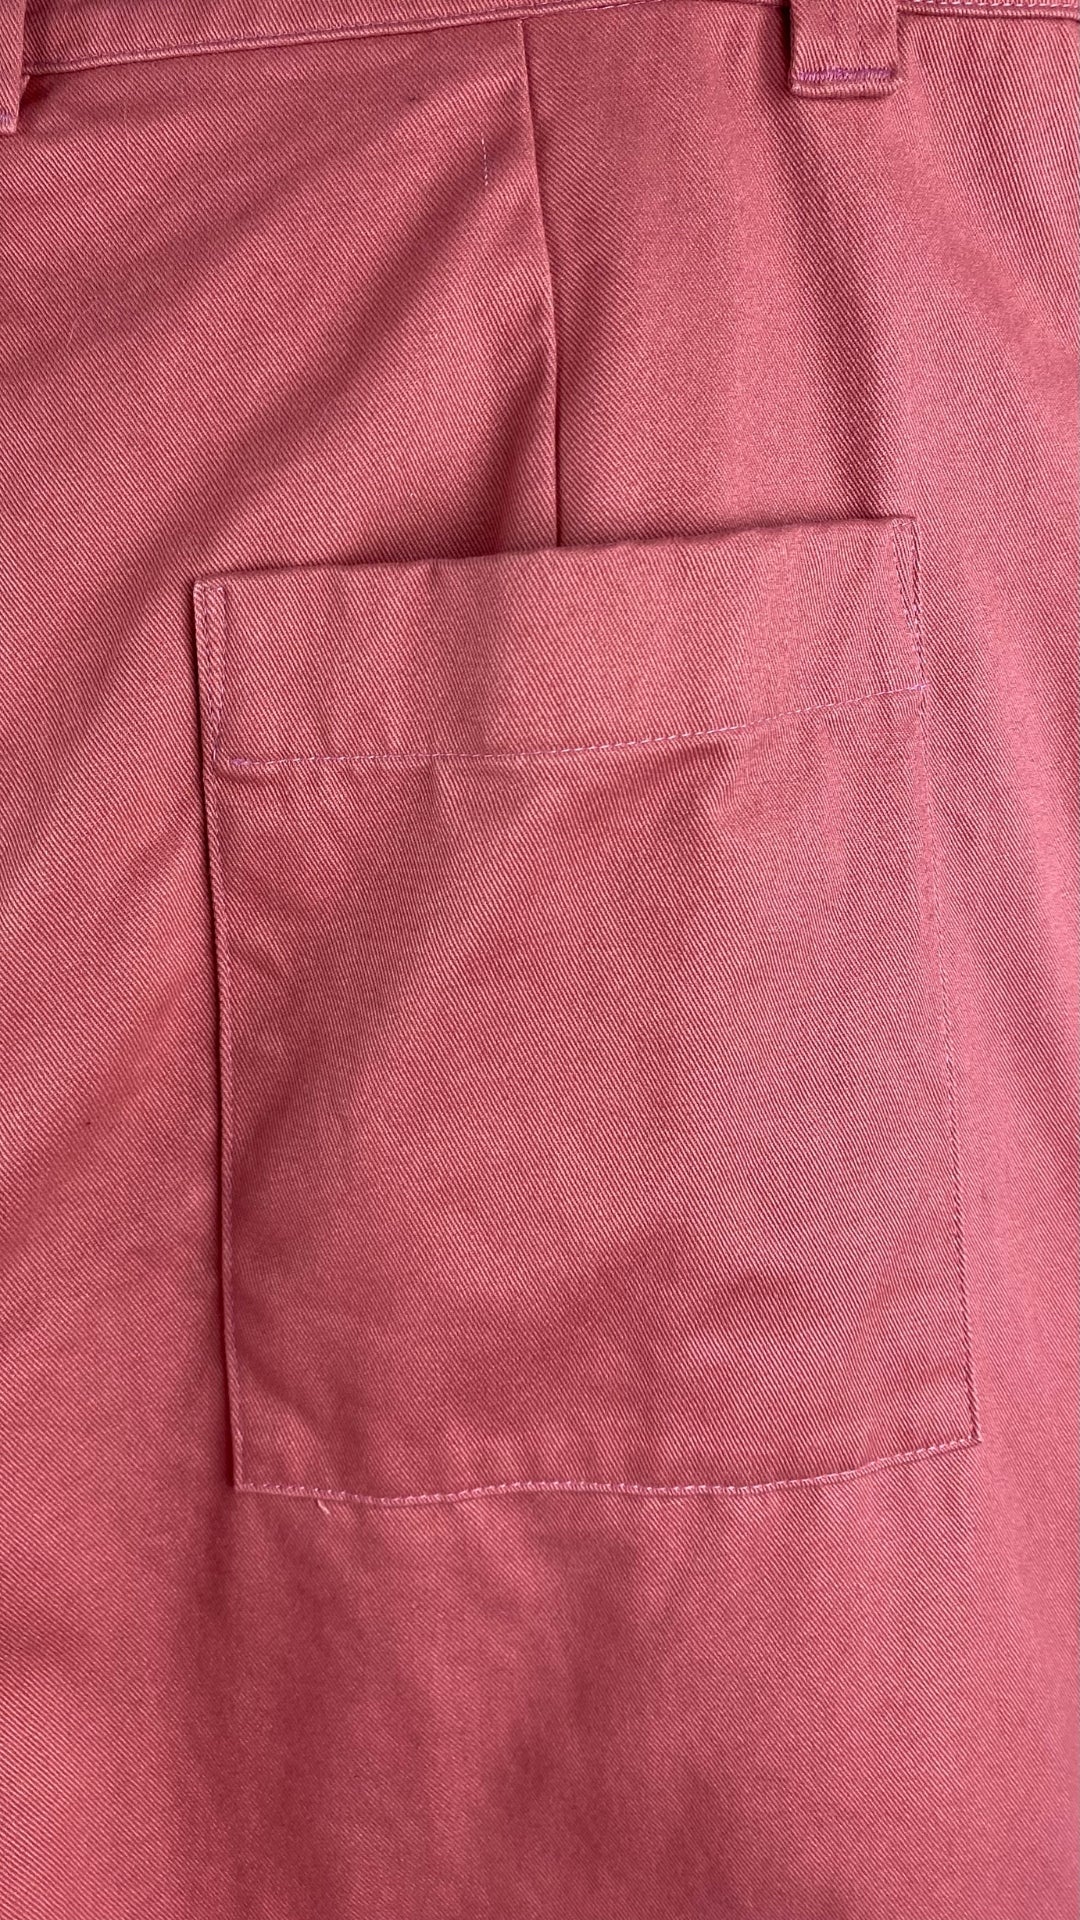 Pantalon en coton rose neuf Beaton, taille 14. Vue de la poche au dos.